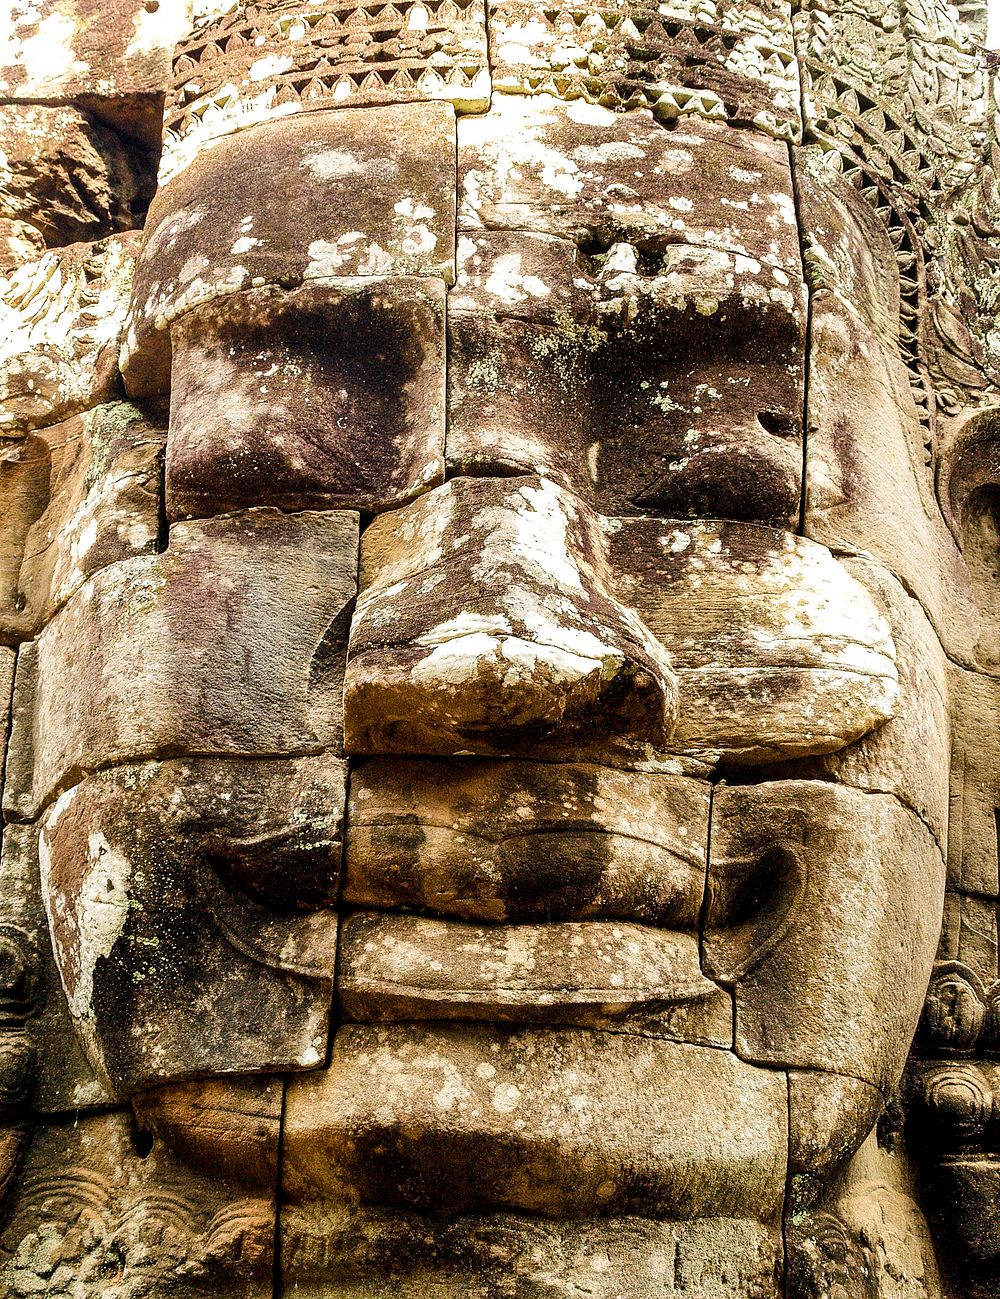 Free statue at Angkor Wat image, public domain Cambodia CC0 photo.